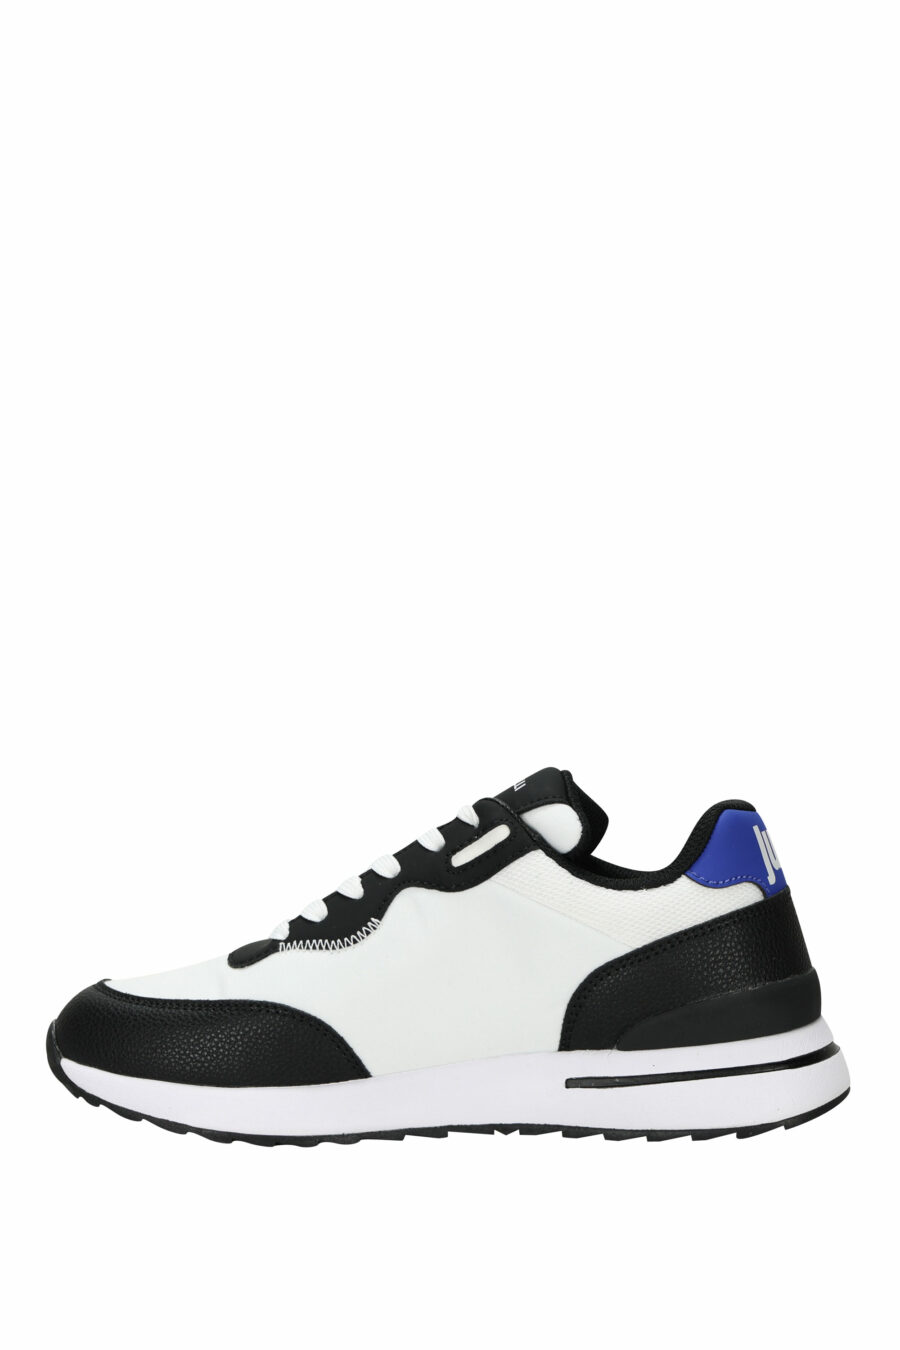 Zapatillas negras con logo circular "c" blanco y suela blanca - 8052672738400 2